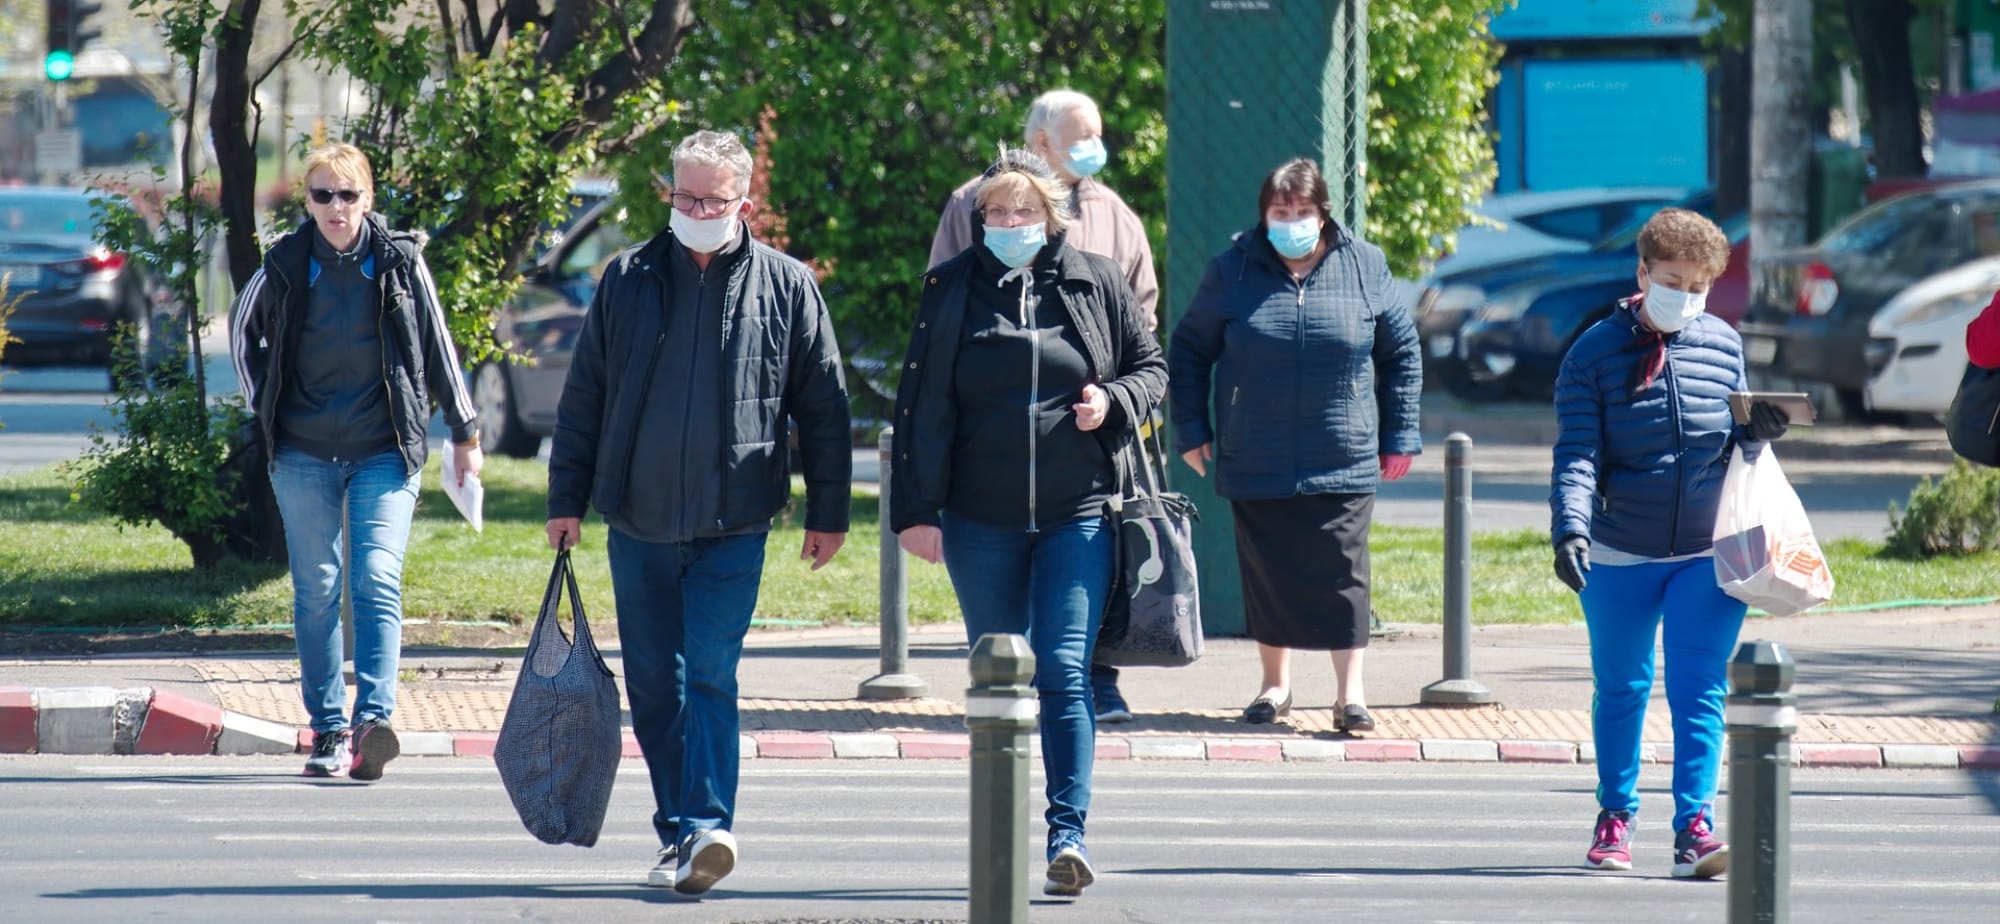 Άνθρωποι με προστατευτική μάσκα διασχίζουν τον δρόμο